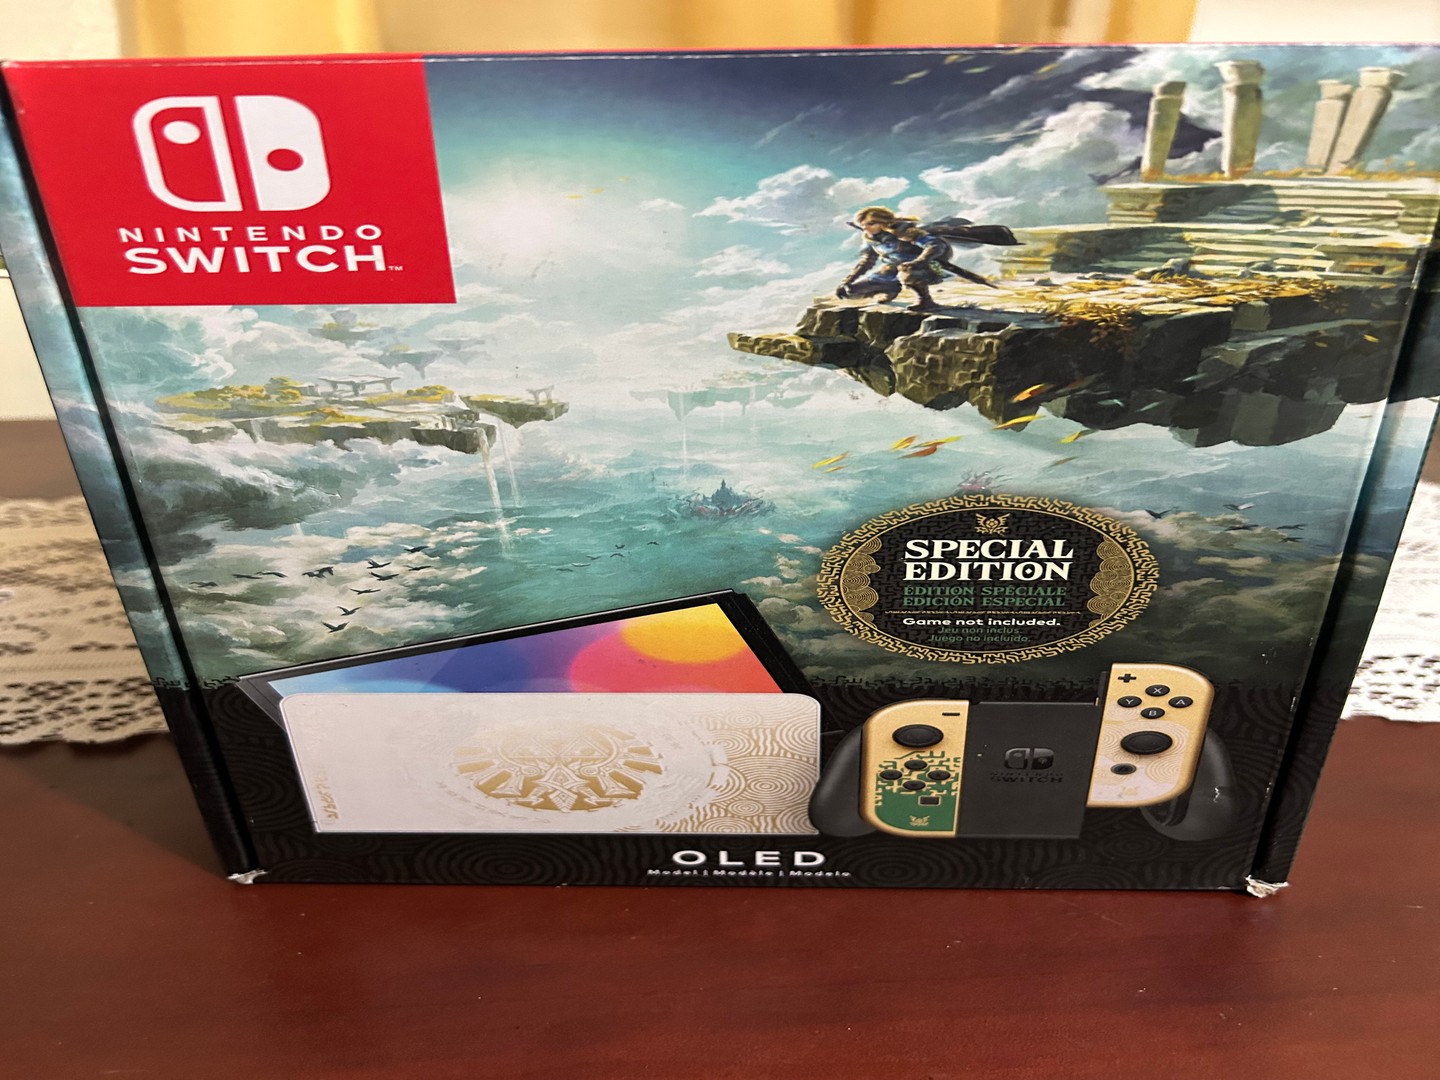 consolas y videojuegos - Nintendo Switch Oled Edicion Zelda como nueva 